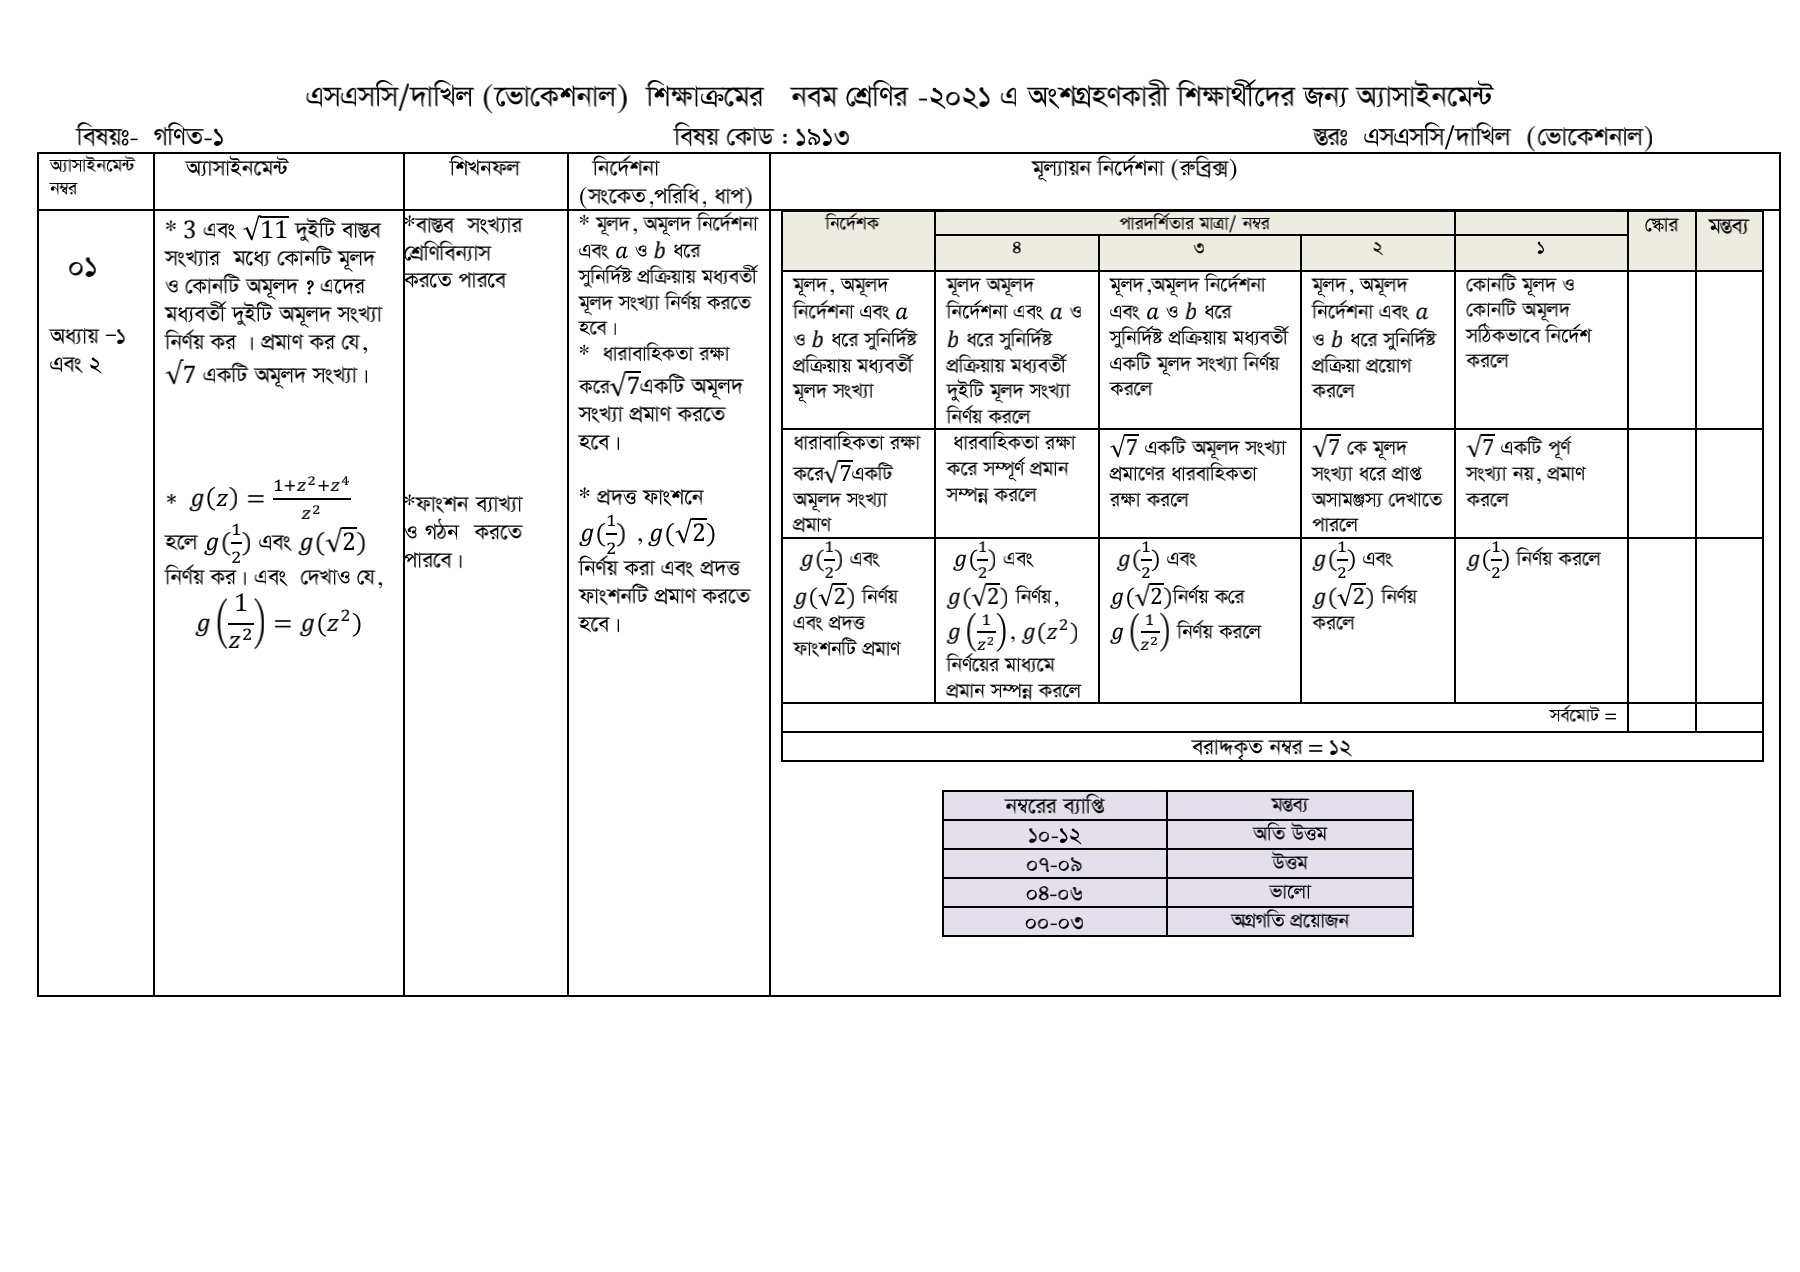 SSC / Dakhil (Vocational) Mathematics-1 Assignment Answer 3rd Week 2021 pdf download